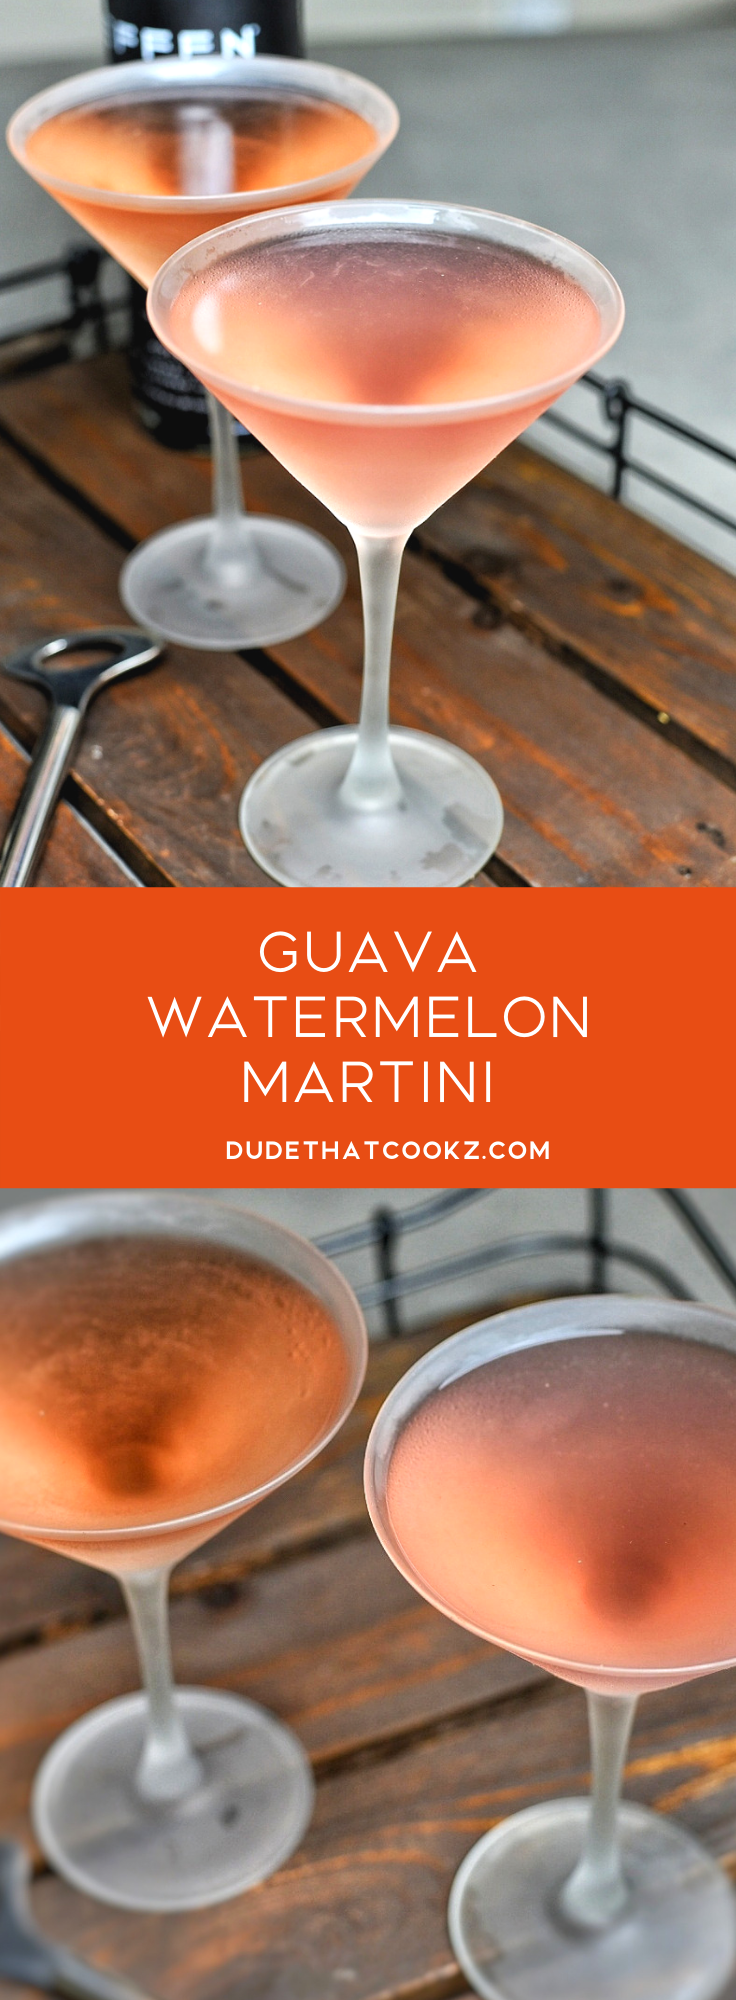 Guava Watermelon Martini